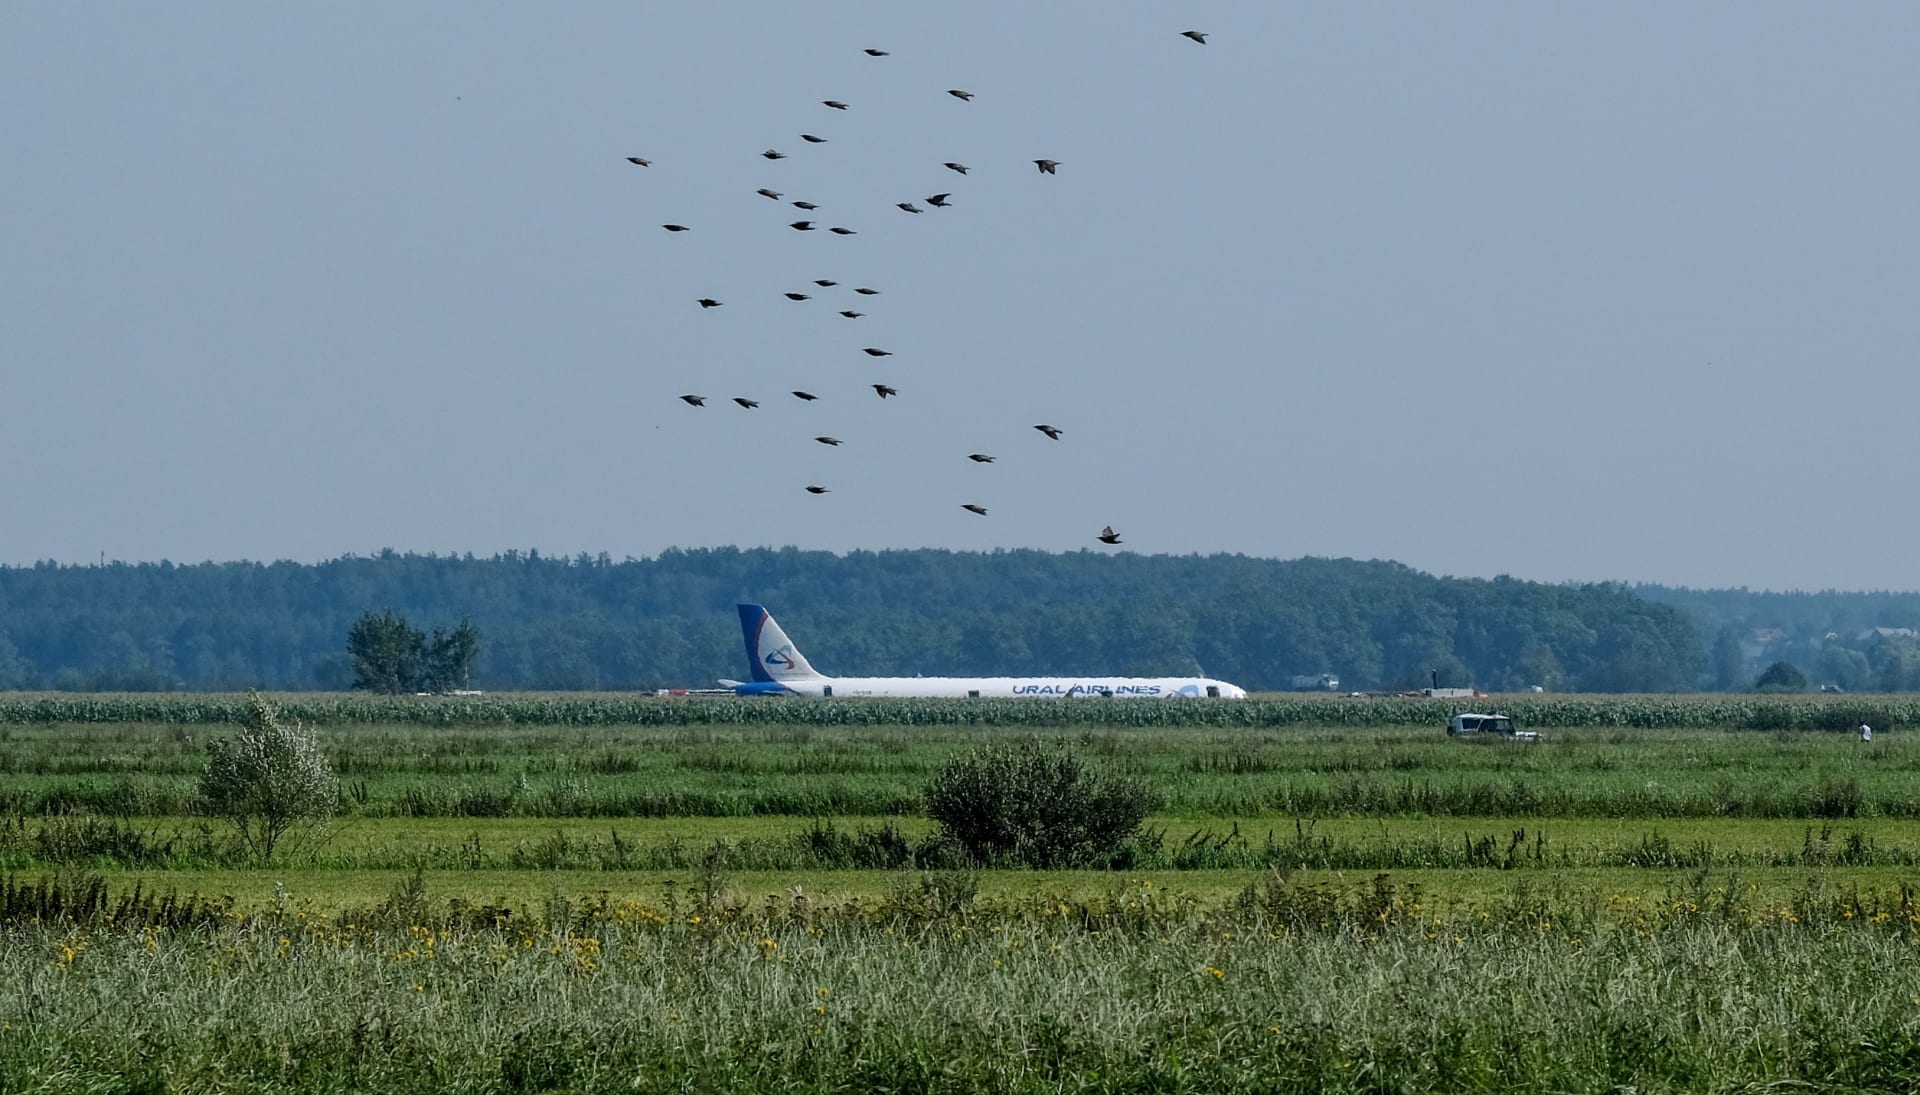 هبوط اضطراري لطائرة روسية تحمل 233 شخصا وسط الحقول بعد اصطدامها بسرب طيور